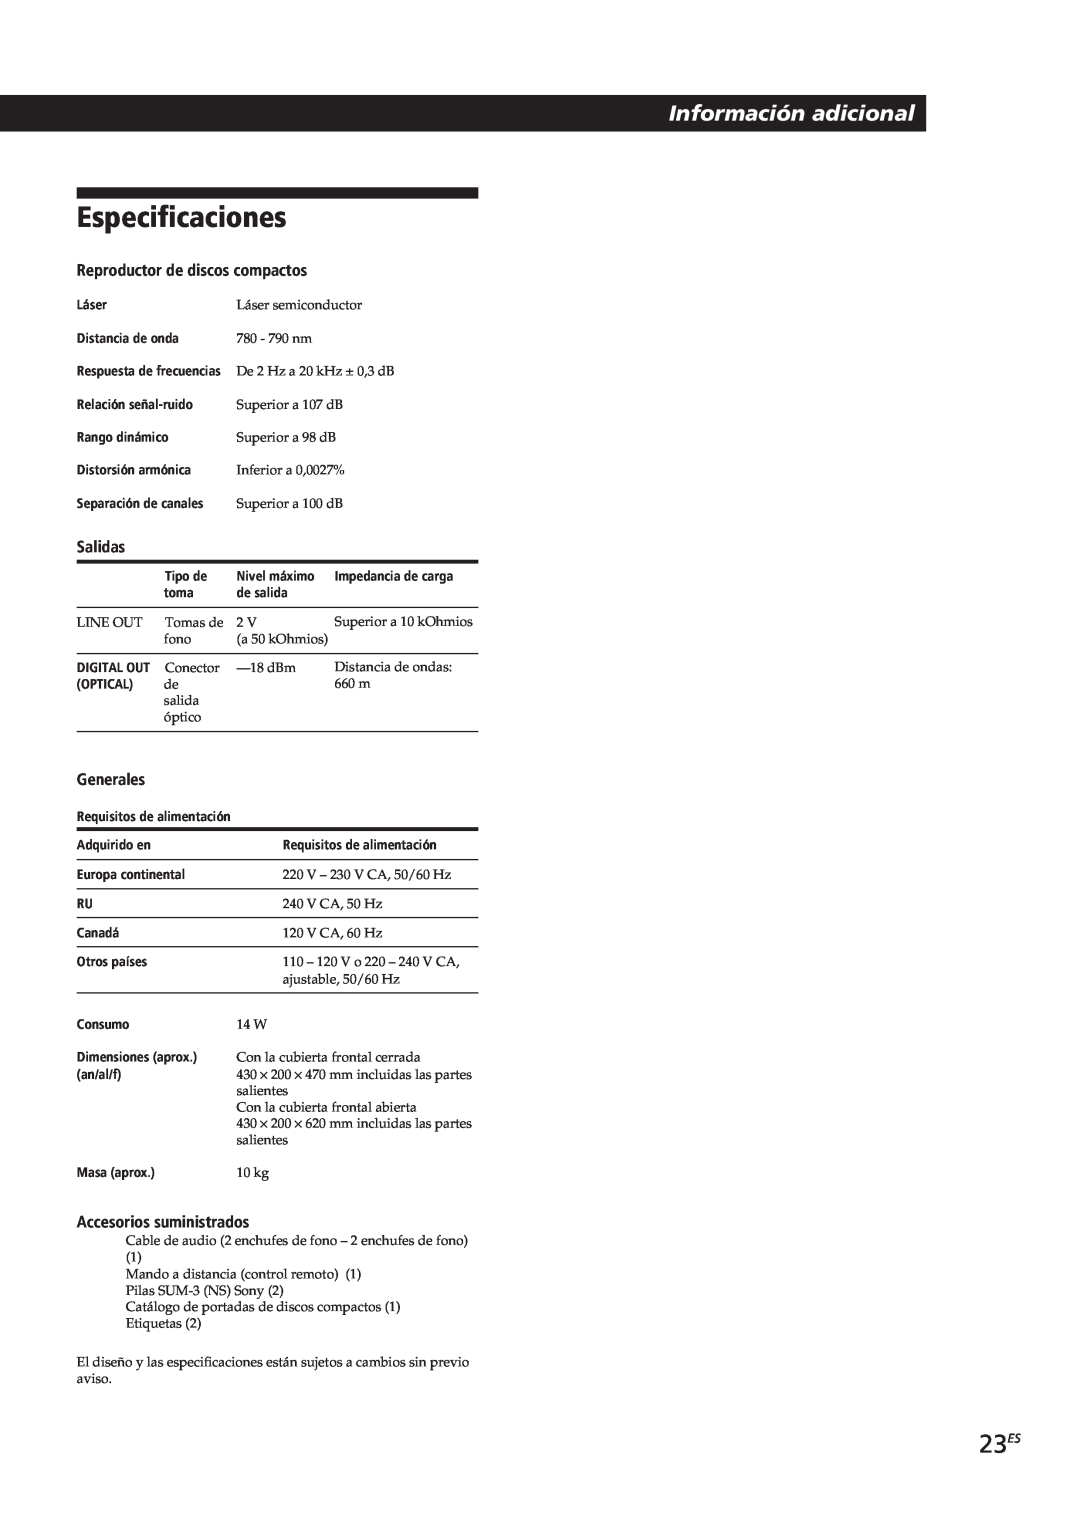 Sony CDP-CX153 manual Especificaciones, 23ES, Información adicional, Reproductor de discos compactos, Salidas, Generales 